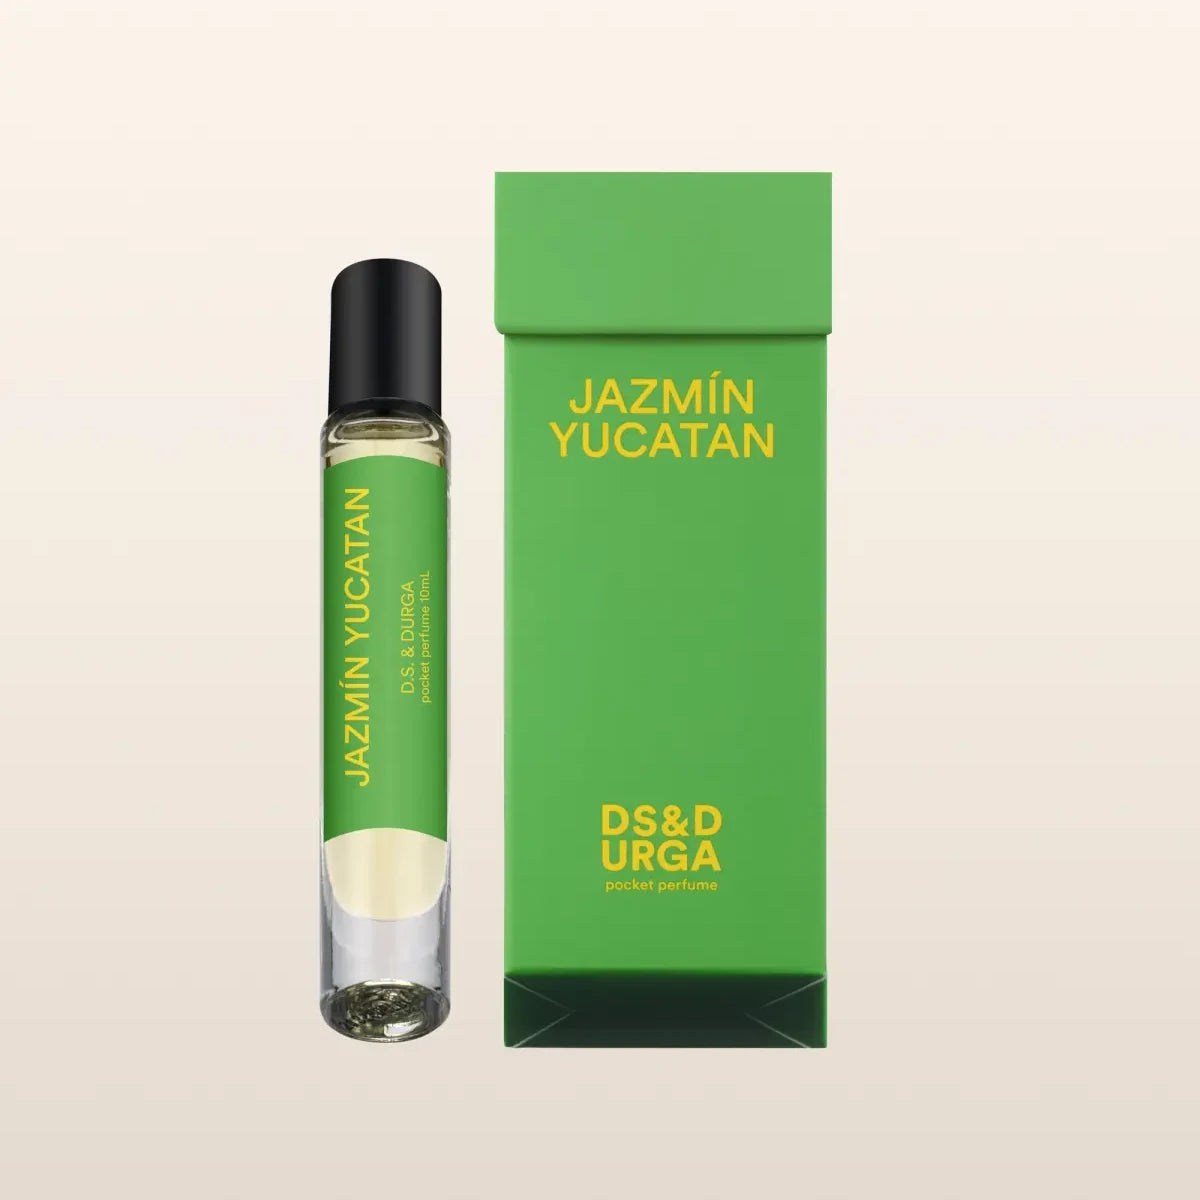 Jazmín Yucatan Pocket Perfume